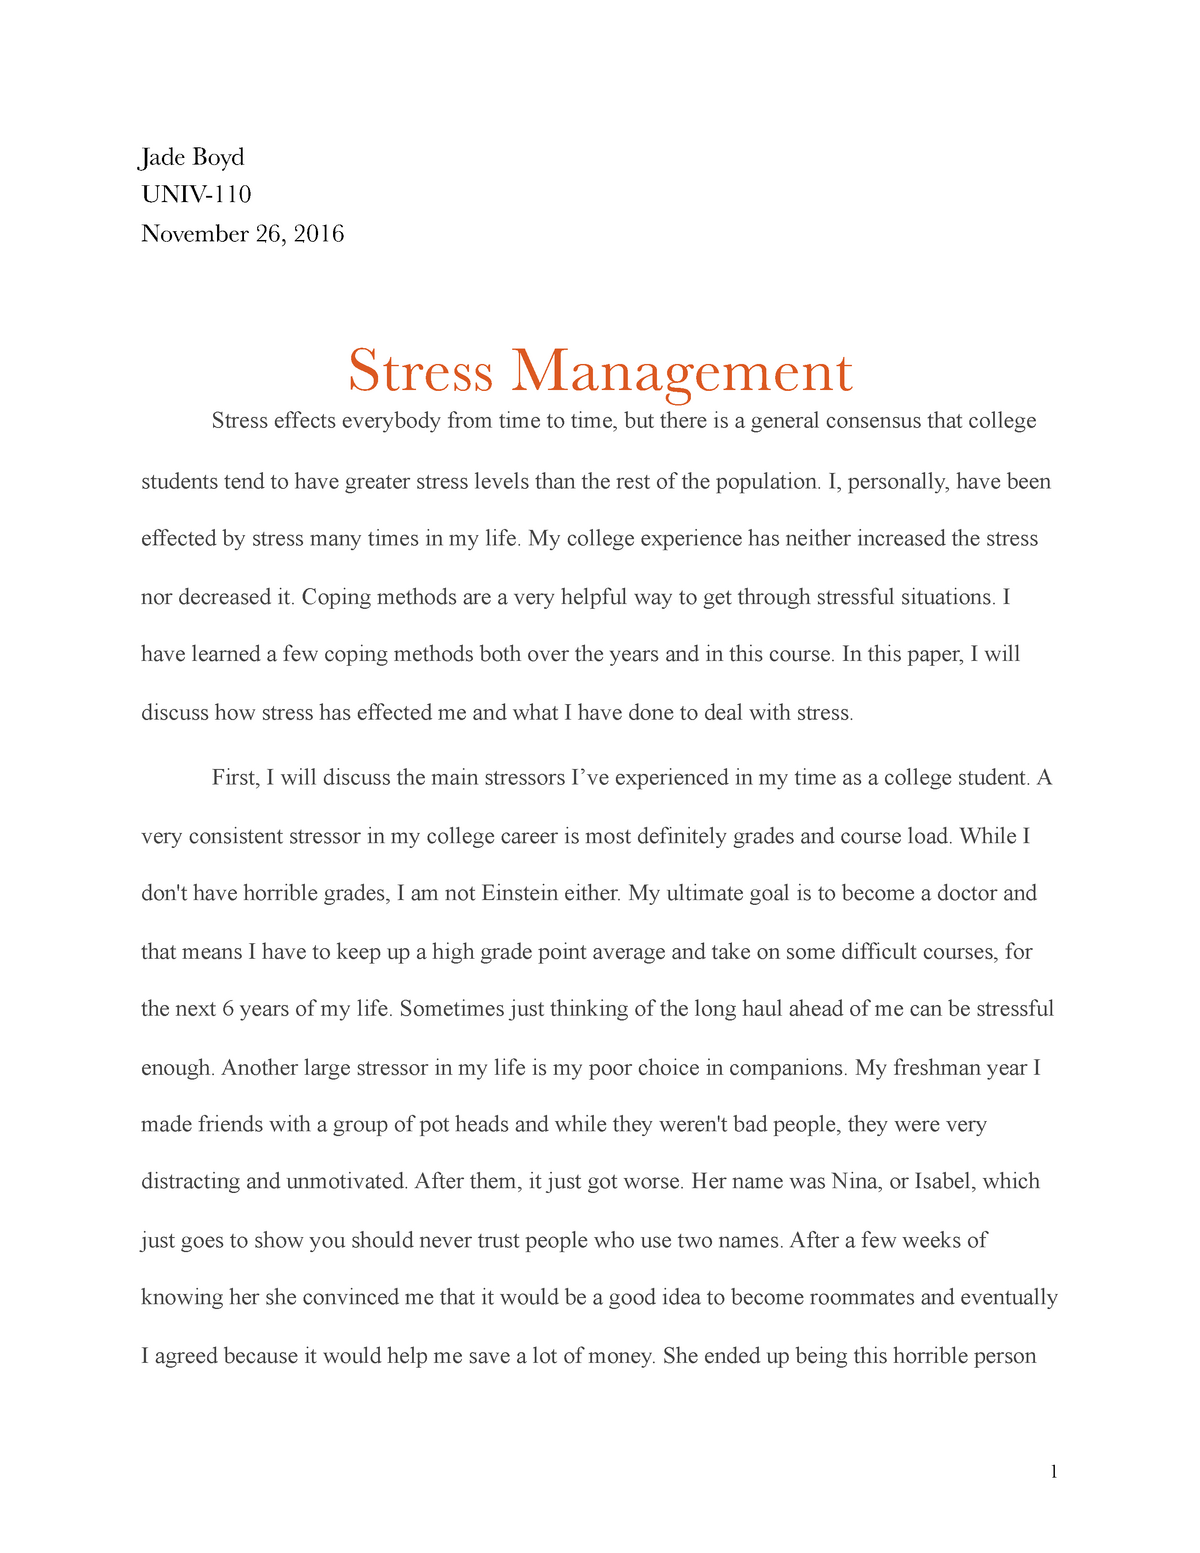 stress narrative essay